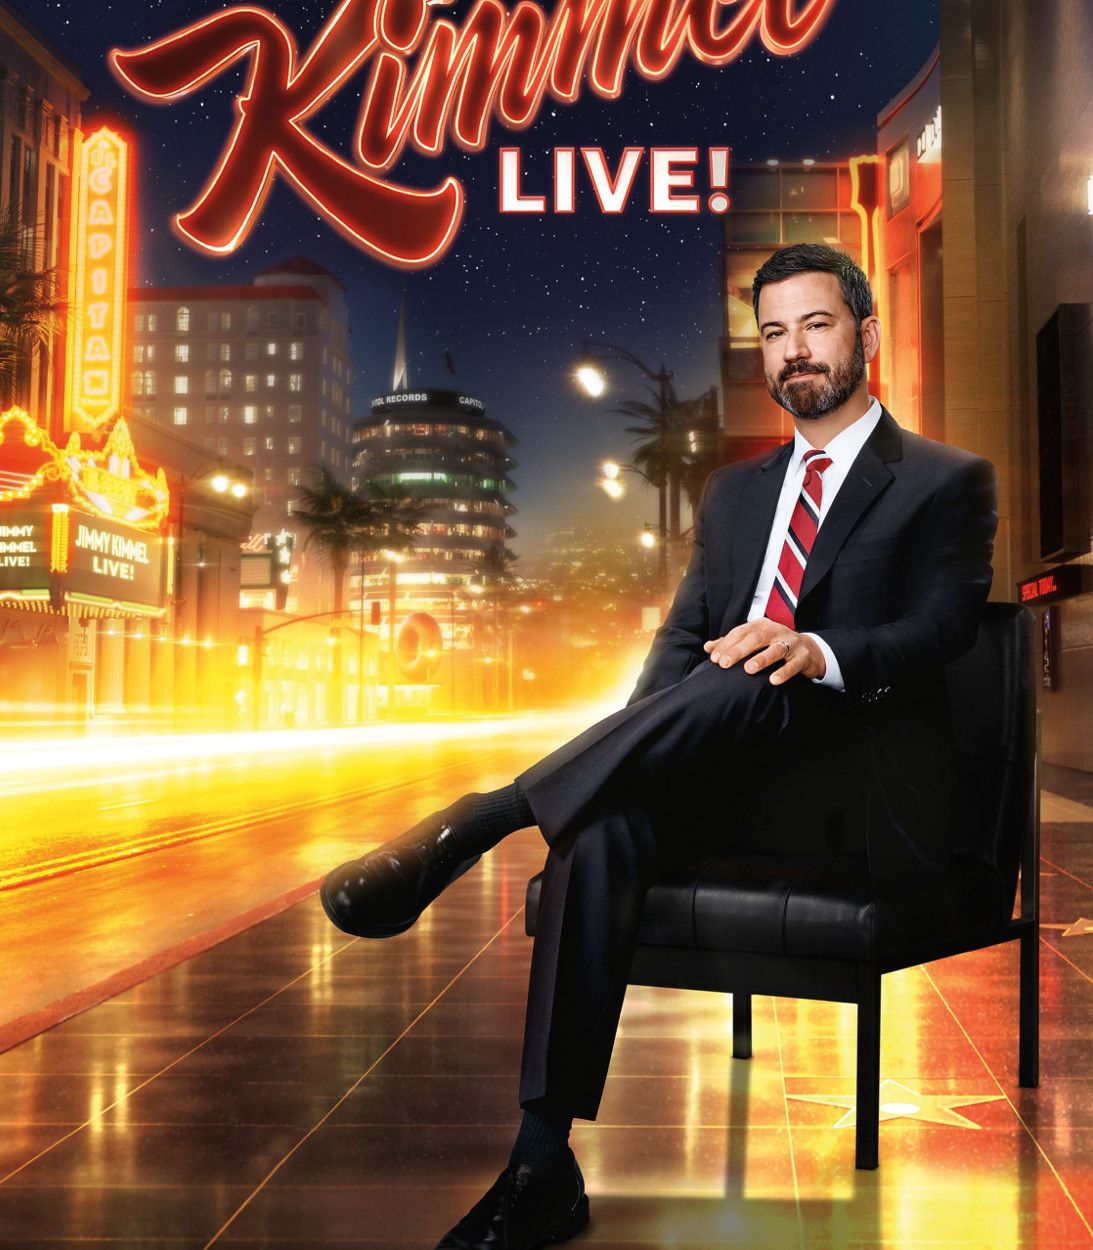 Jimmy-Kimmel-Live-TV-Show-Poster-TLDR-Vertical